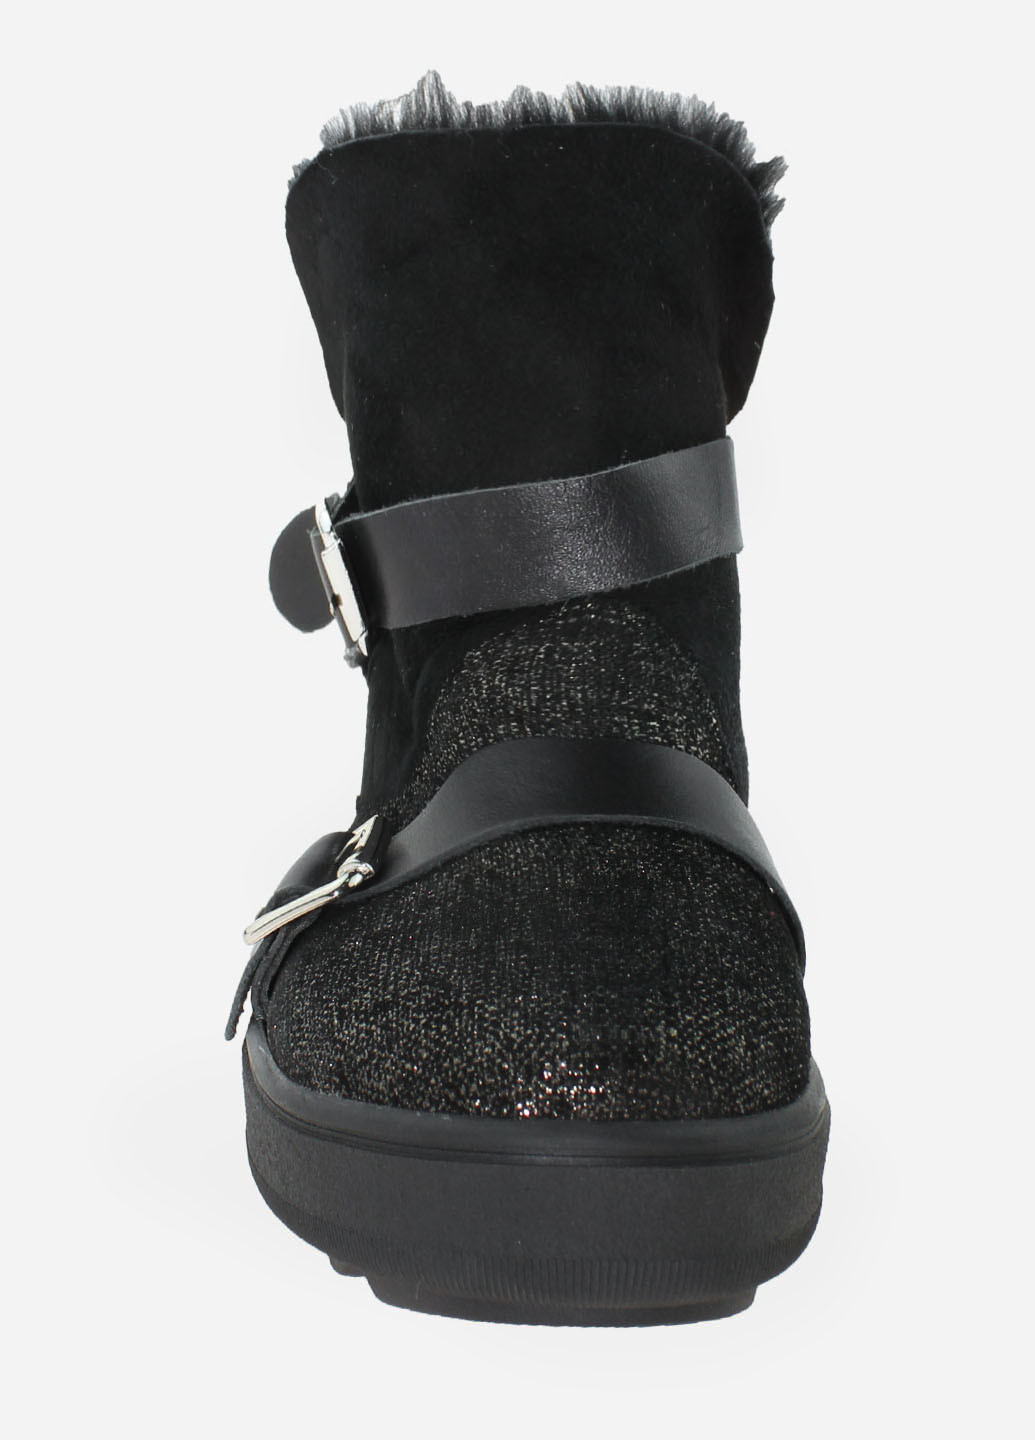 Зимние ботинки rg18-56004 черный Gampr из натурального нубука